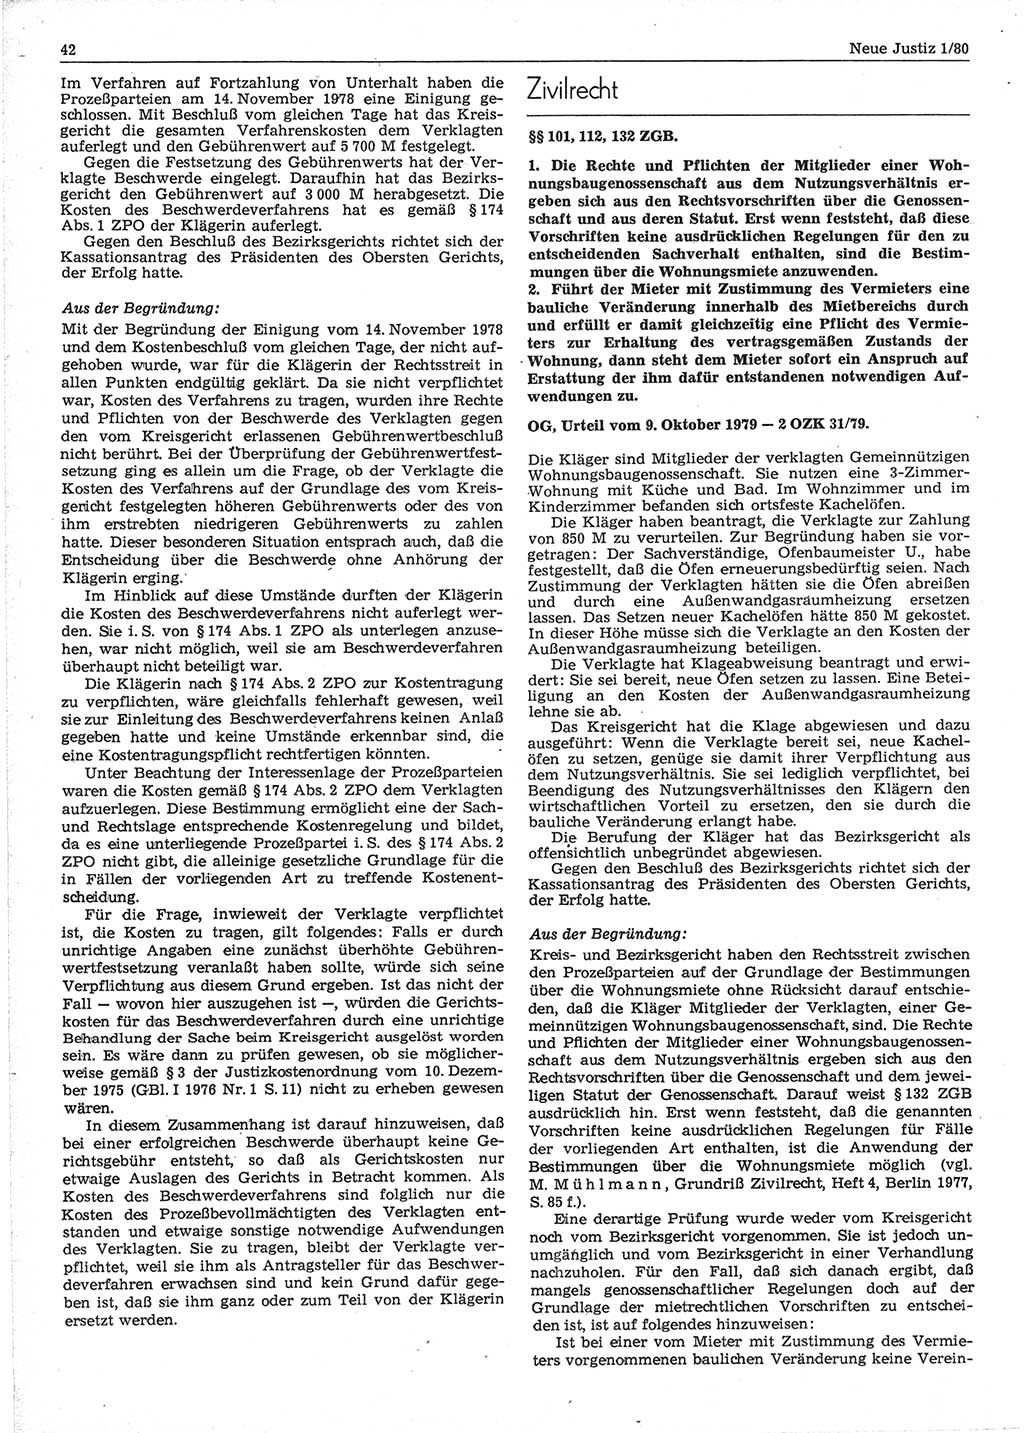 Neue Justiz (NJ), Zeitschrift für sozialistisches Recht und Gesetzlichkeit [Deutsche Demokratische Republik (DDR)], 34. Jahrgang 1980, Seite 42 (NJ DDR 1980, S. 42)